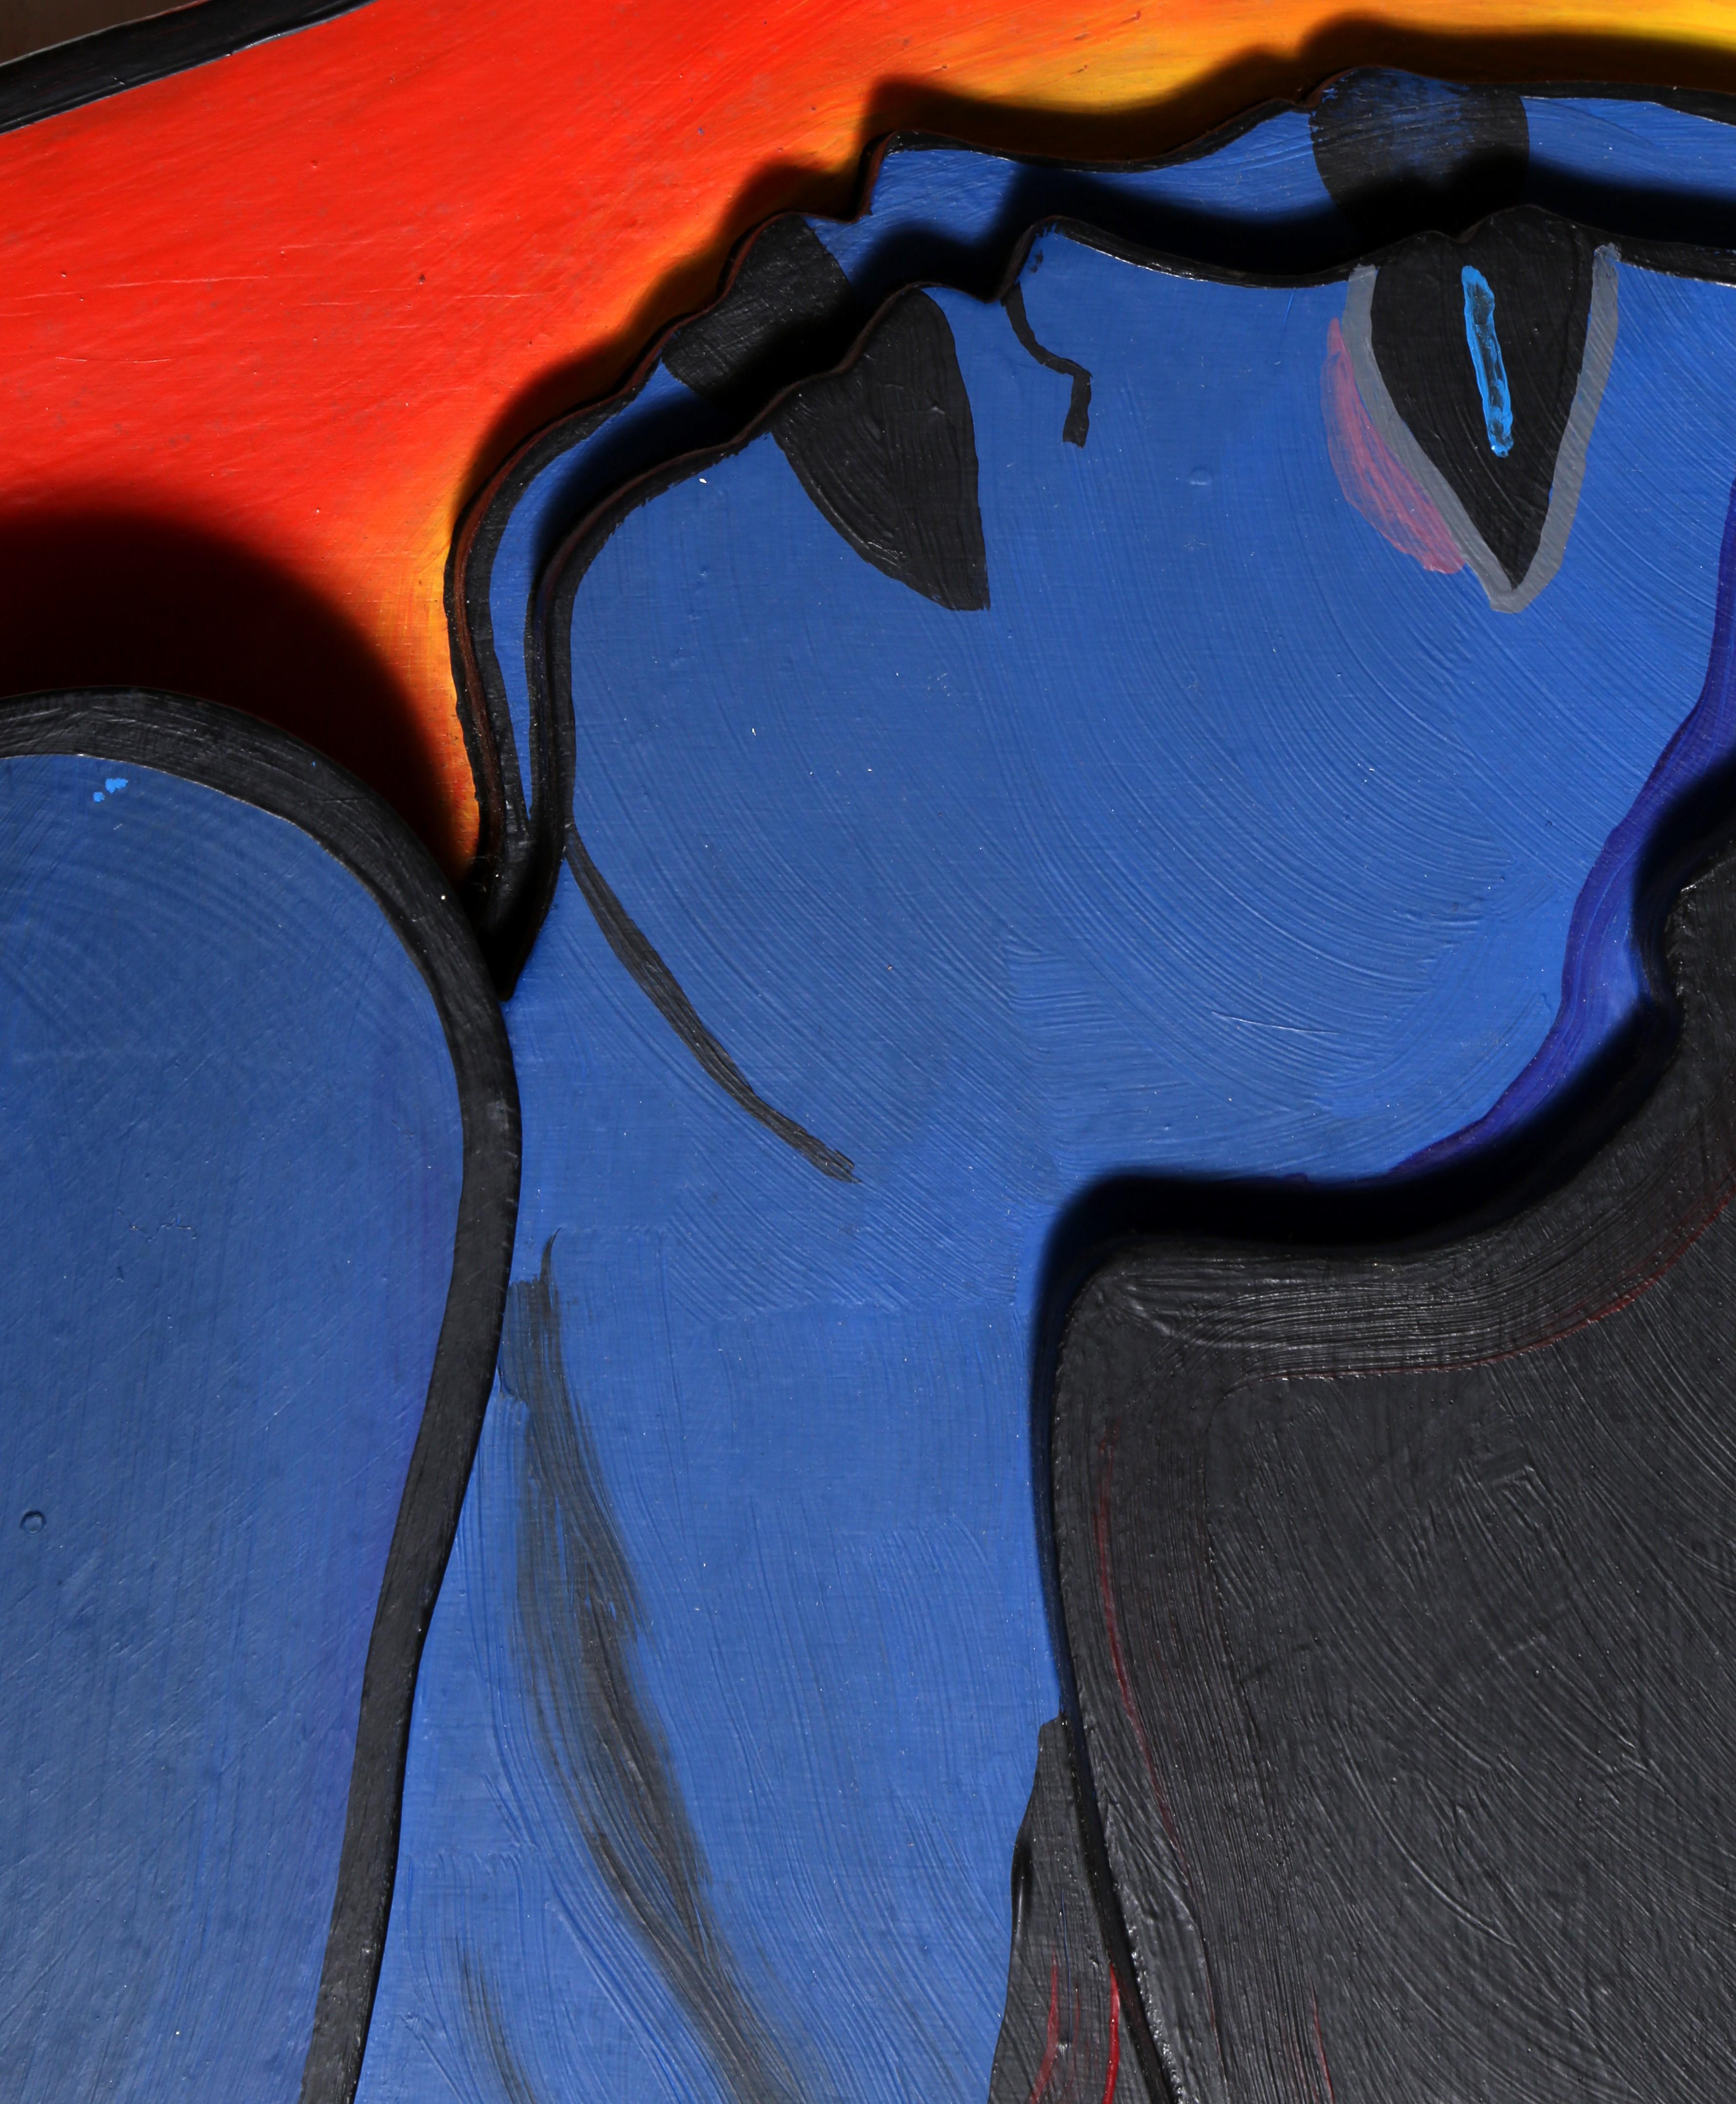 Cette sculpture en bois peint de l'artiste belge Corneille, datant de 1980, est une représentation expressionniste de deux nus.  Corneille a été influencé par Miró, Picasso et Paul Klee, mais a revendiqué le lien le plus profond avec van Gogh en